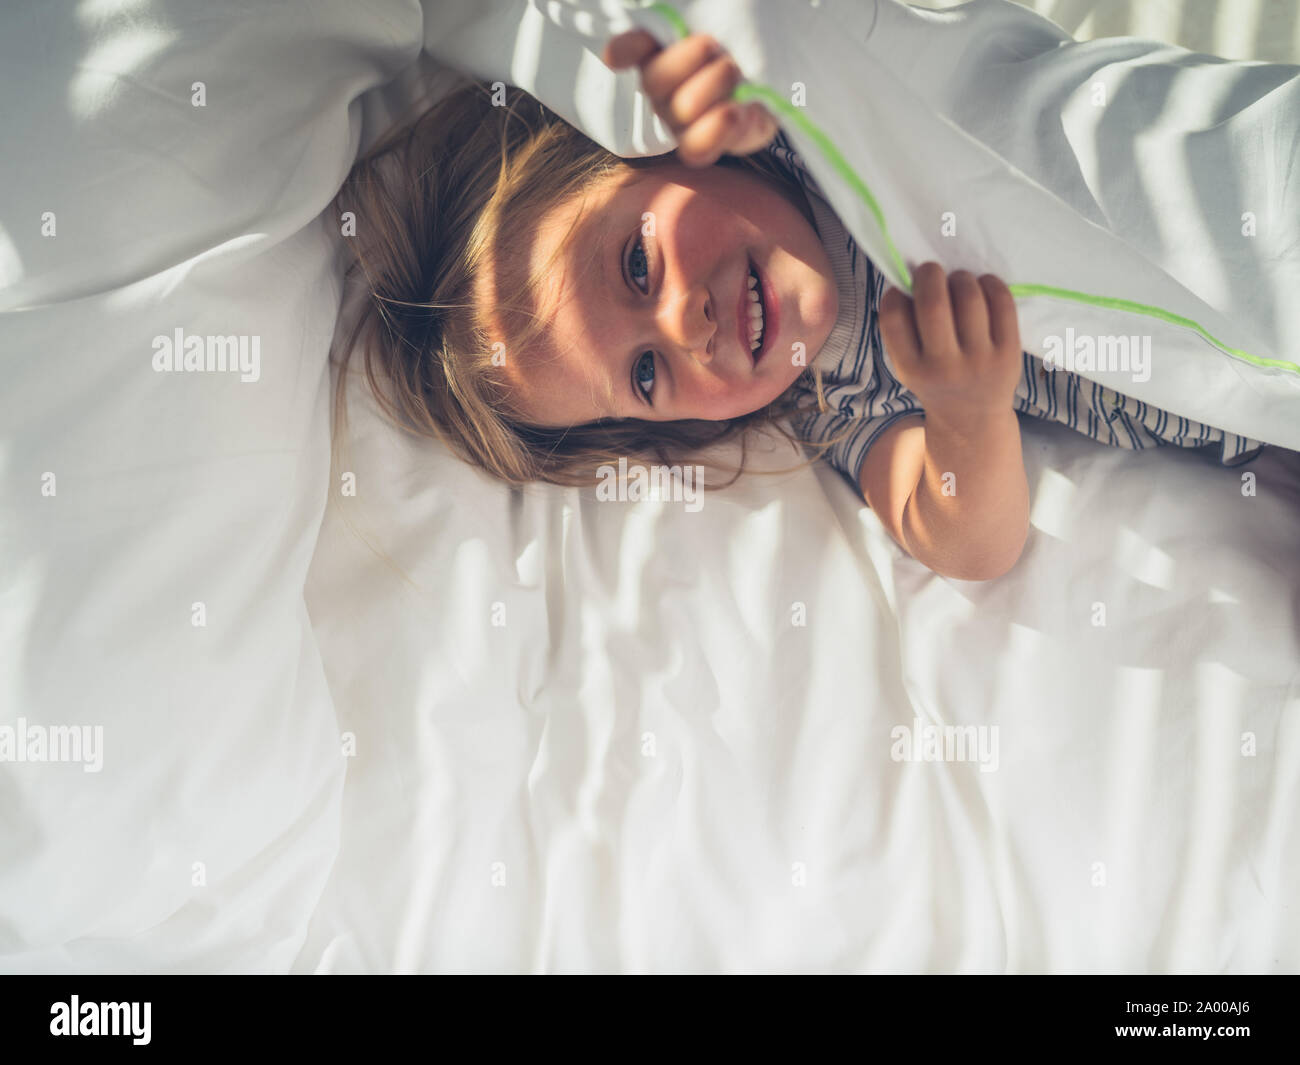 Ein kleines Kind versteckt sich unter den Abdeckungen in einem Bett Stockfoto